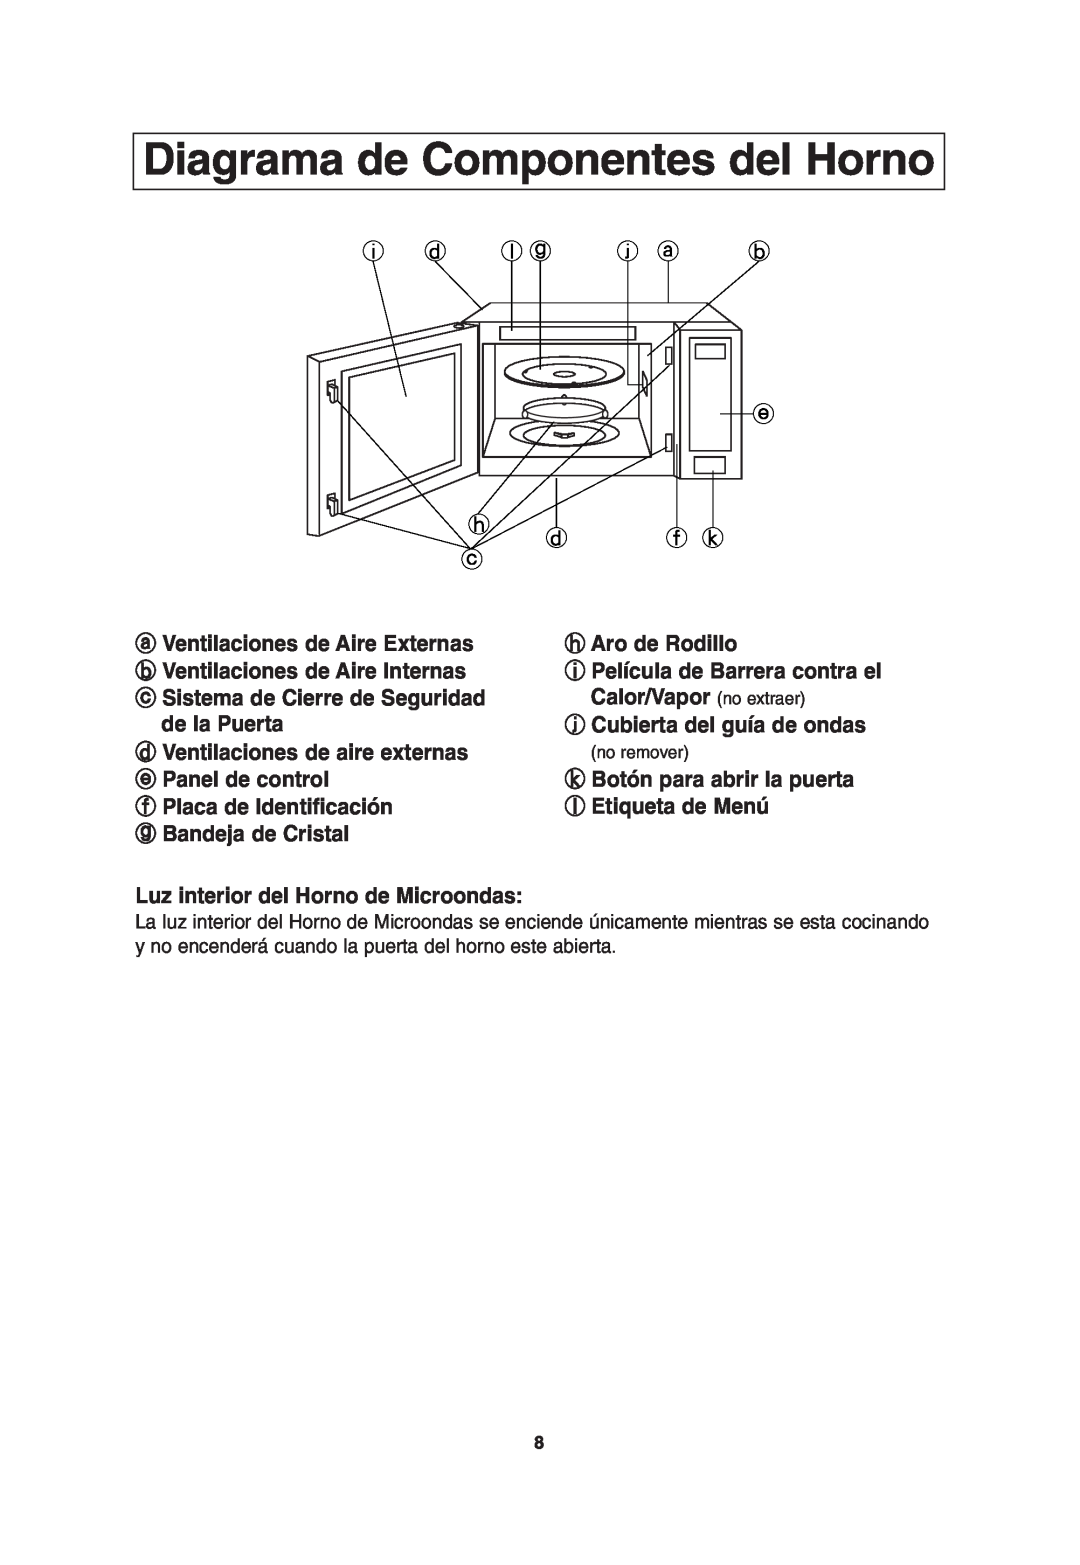 Panasonic NN-T685, NN-T675 operating instructions Diagrama de Componentes del Horno 